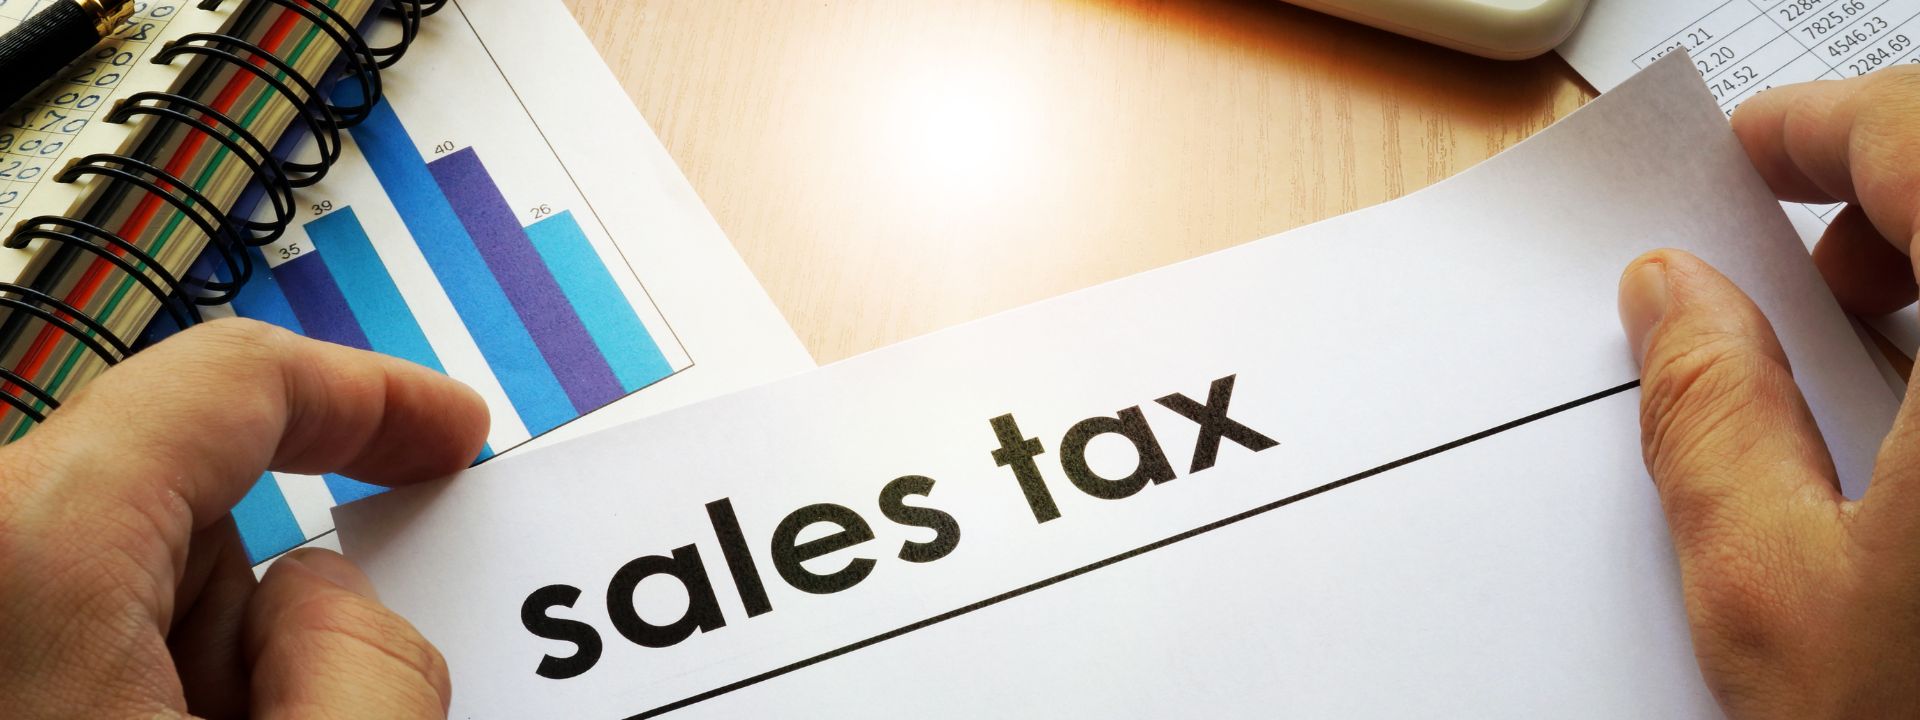  Sales Tax Registration